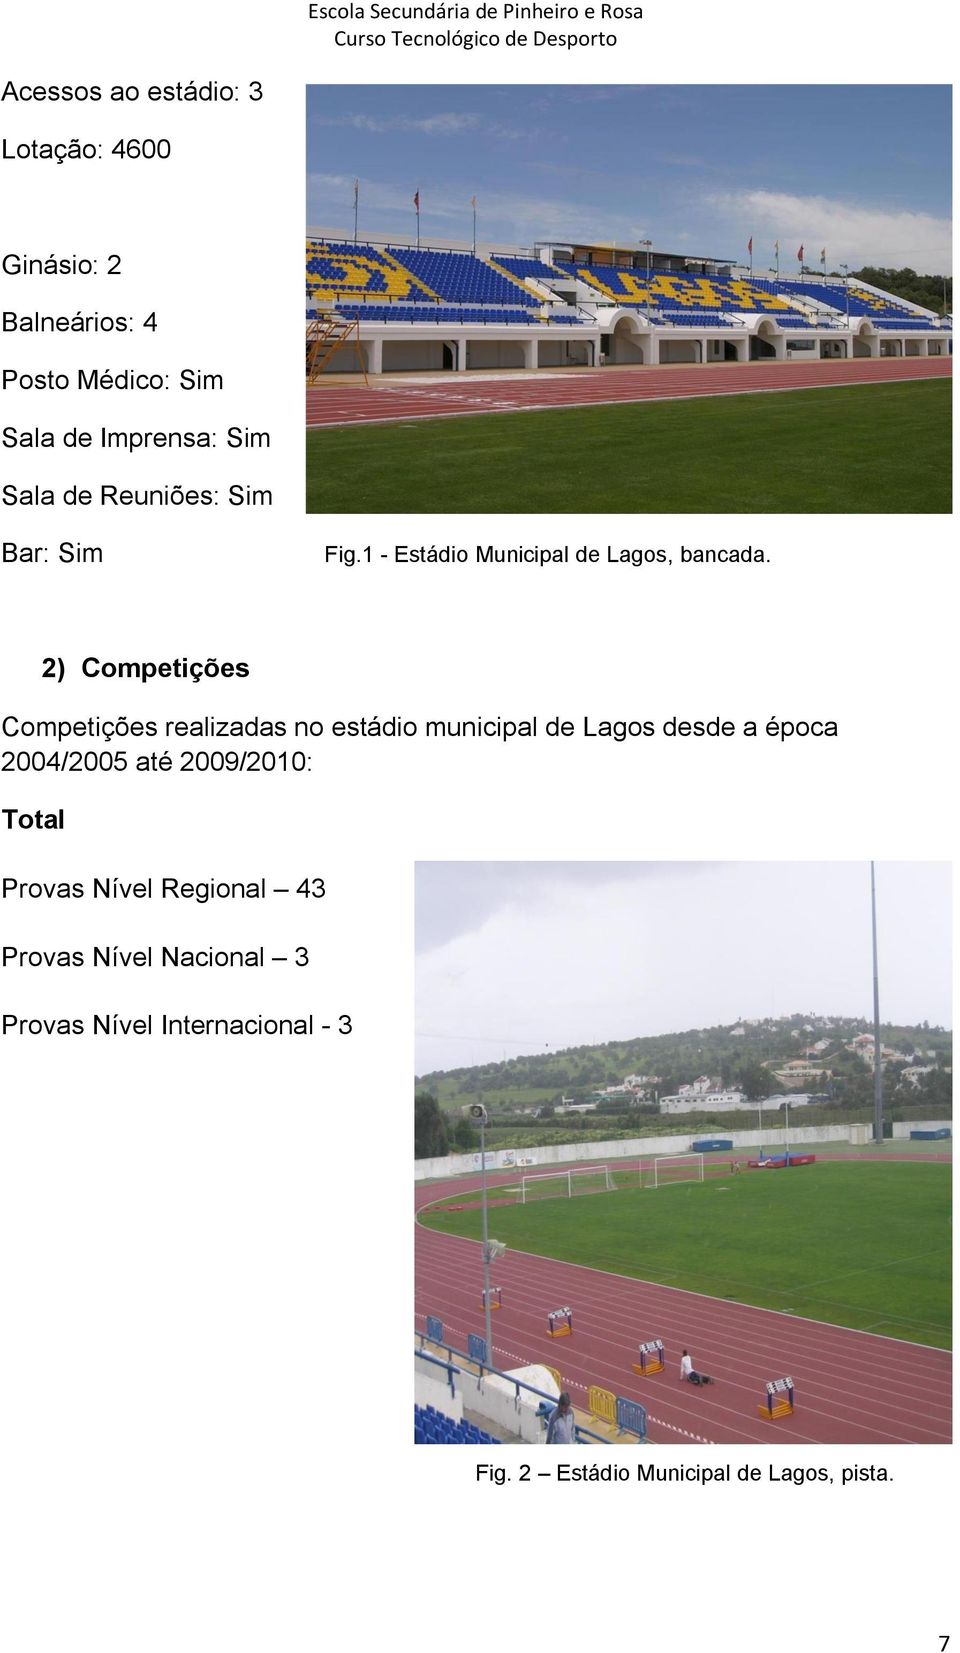 2) Competições Competições realizadas no estádio municipal de Lagos desde a época 2004/2005 até